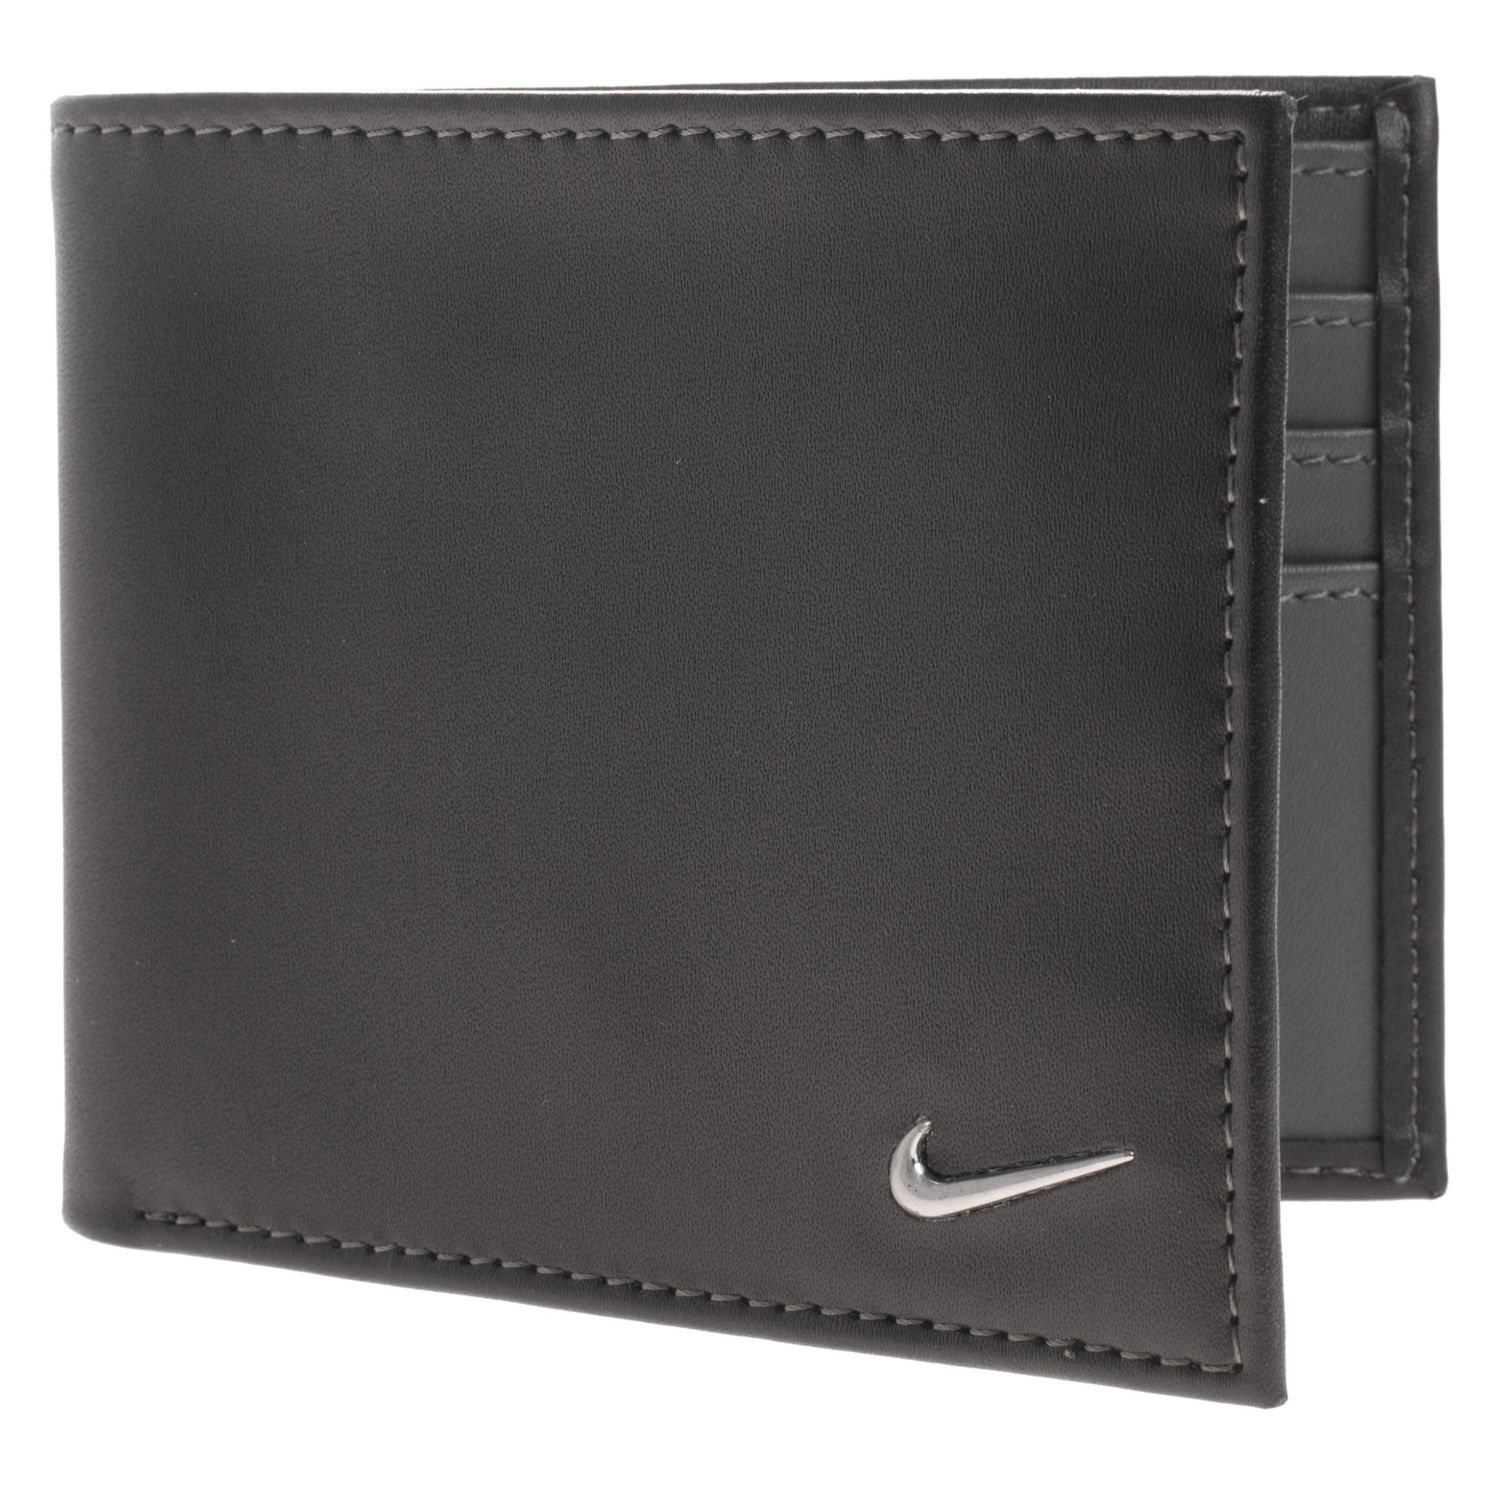 Men's Nike Leather Bifold Wallet